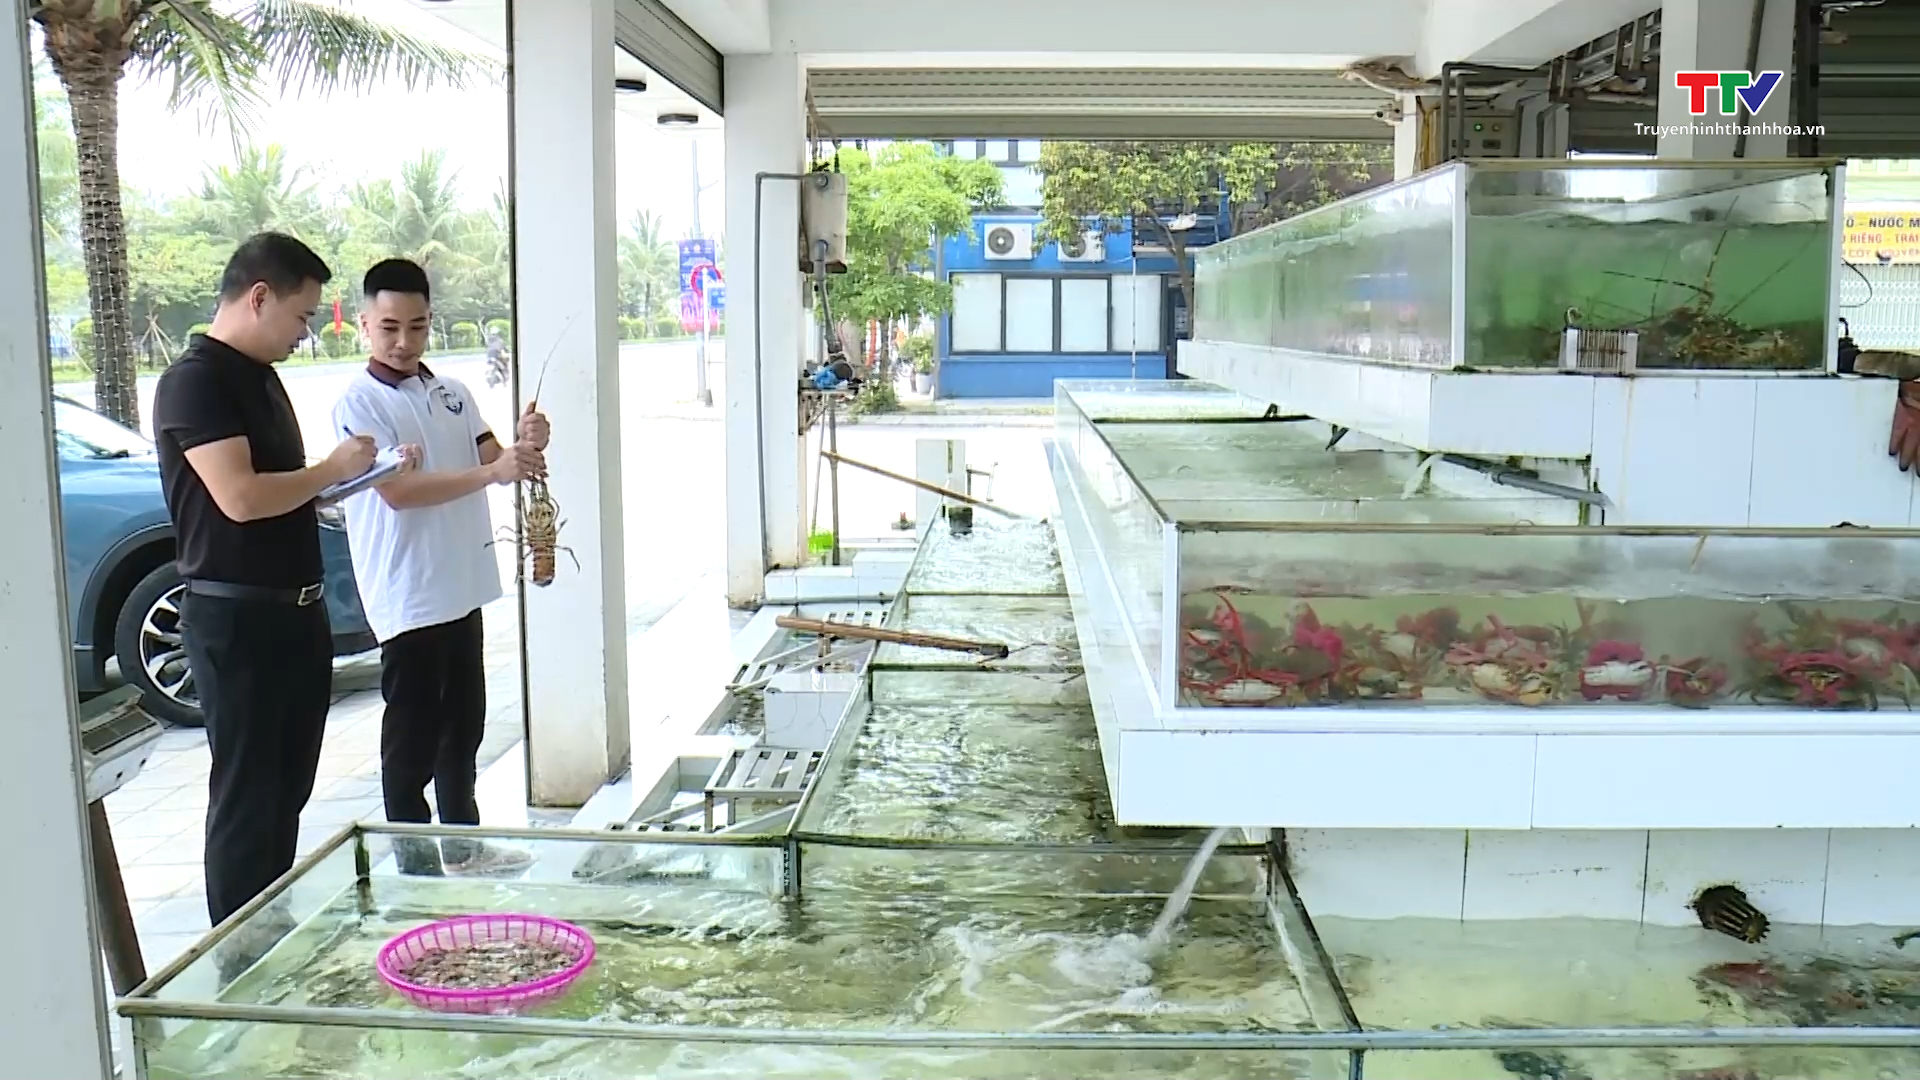 Sầm Sơn đảm bảo an toàn thực phẩm tại các cơ sở kinh doanh dịch vụ ăn uống - Ảnh 4.